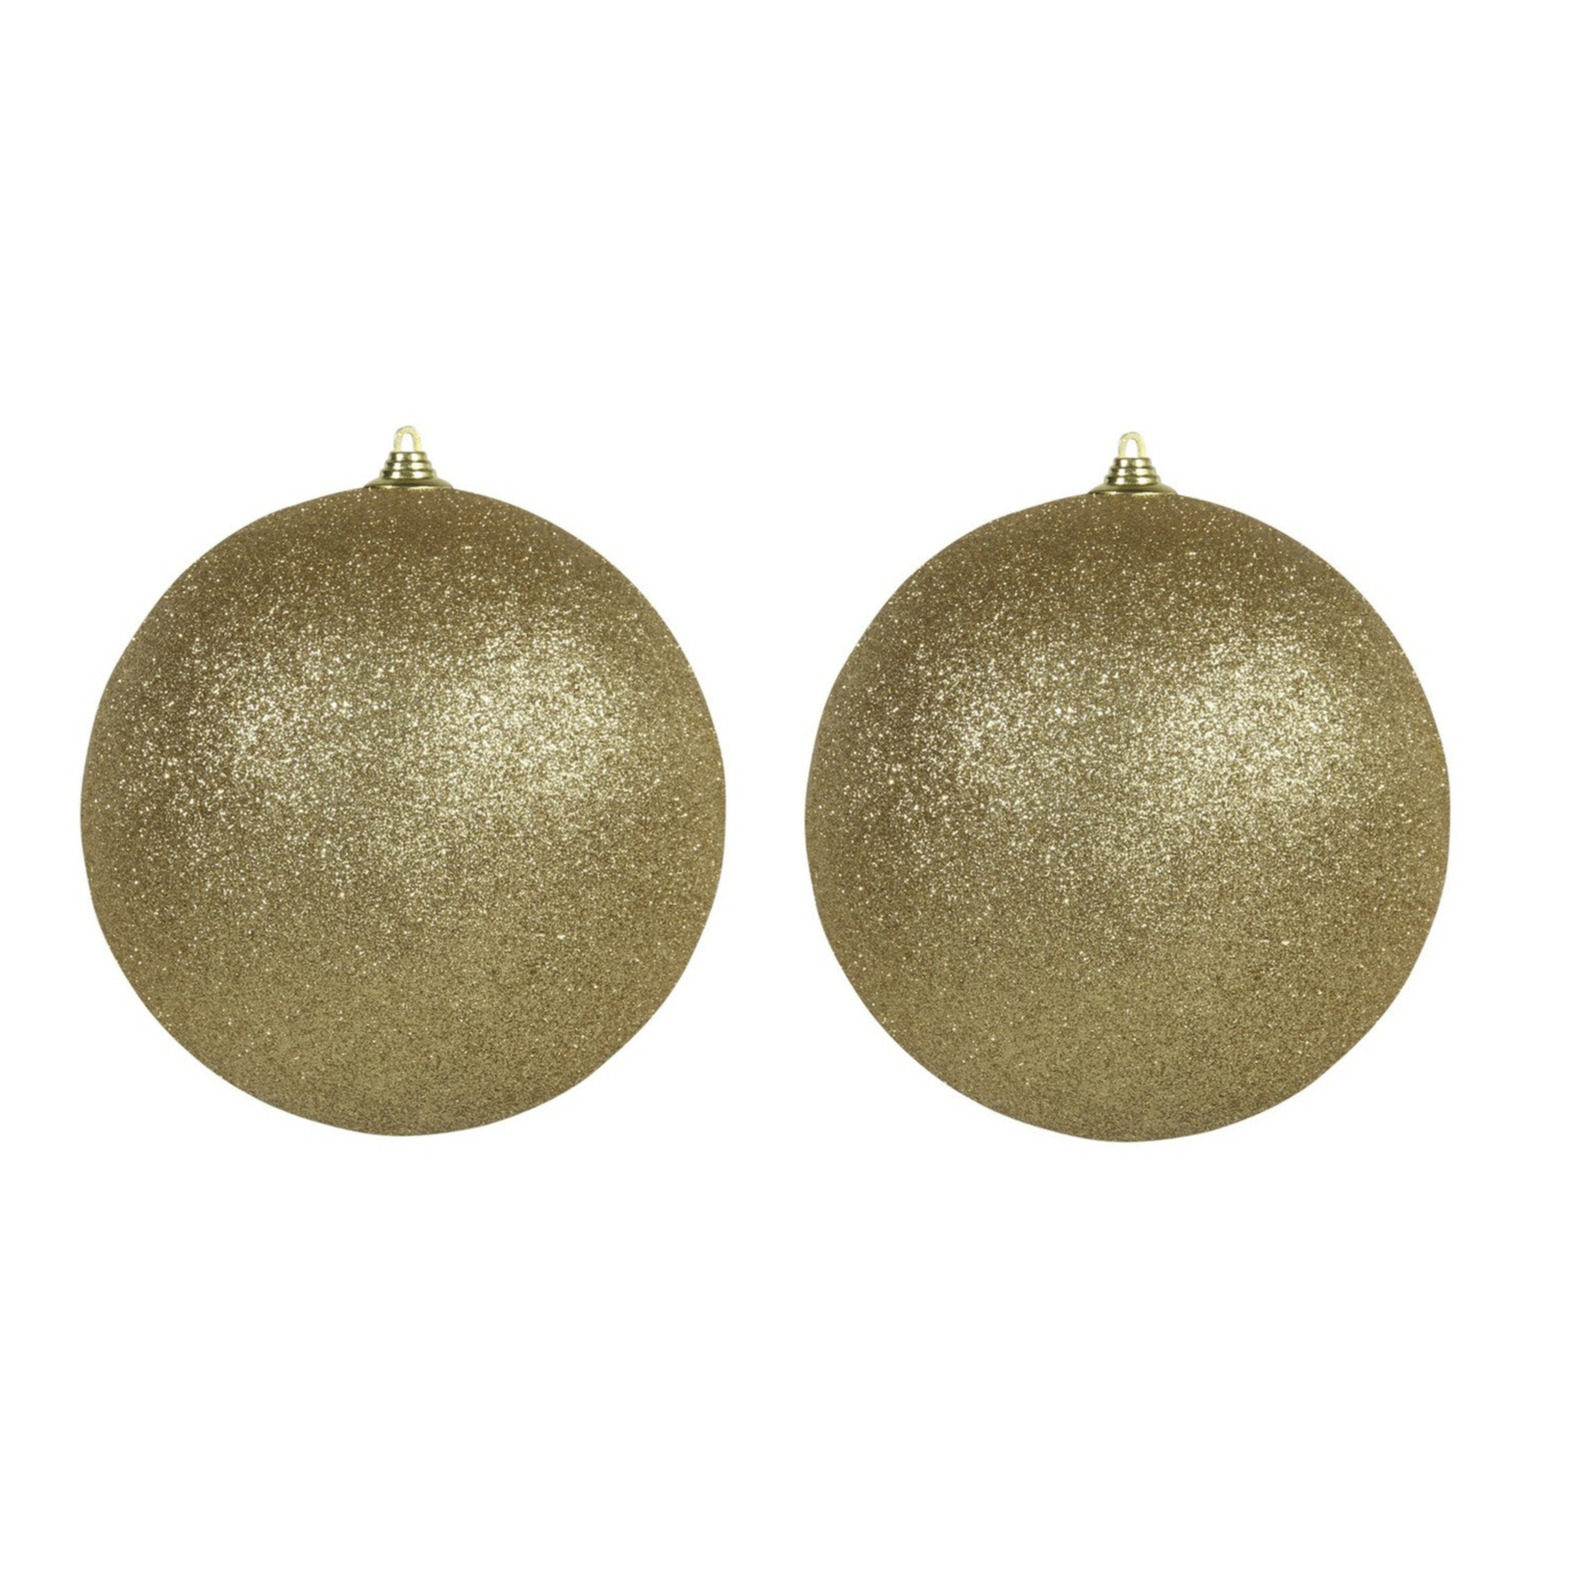 Kerstversiering 4x grote gouden XL ballen met glitter 18 cm